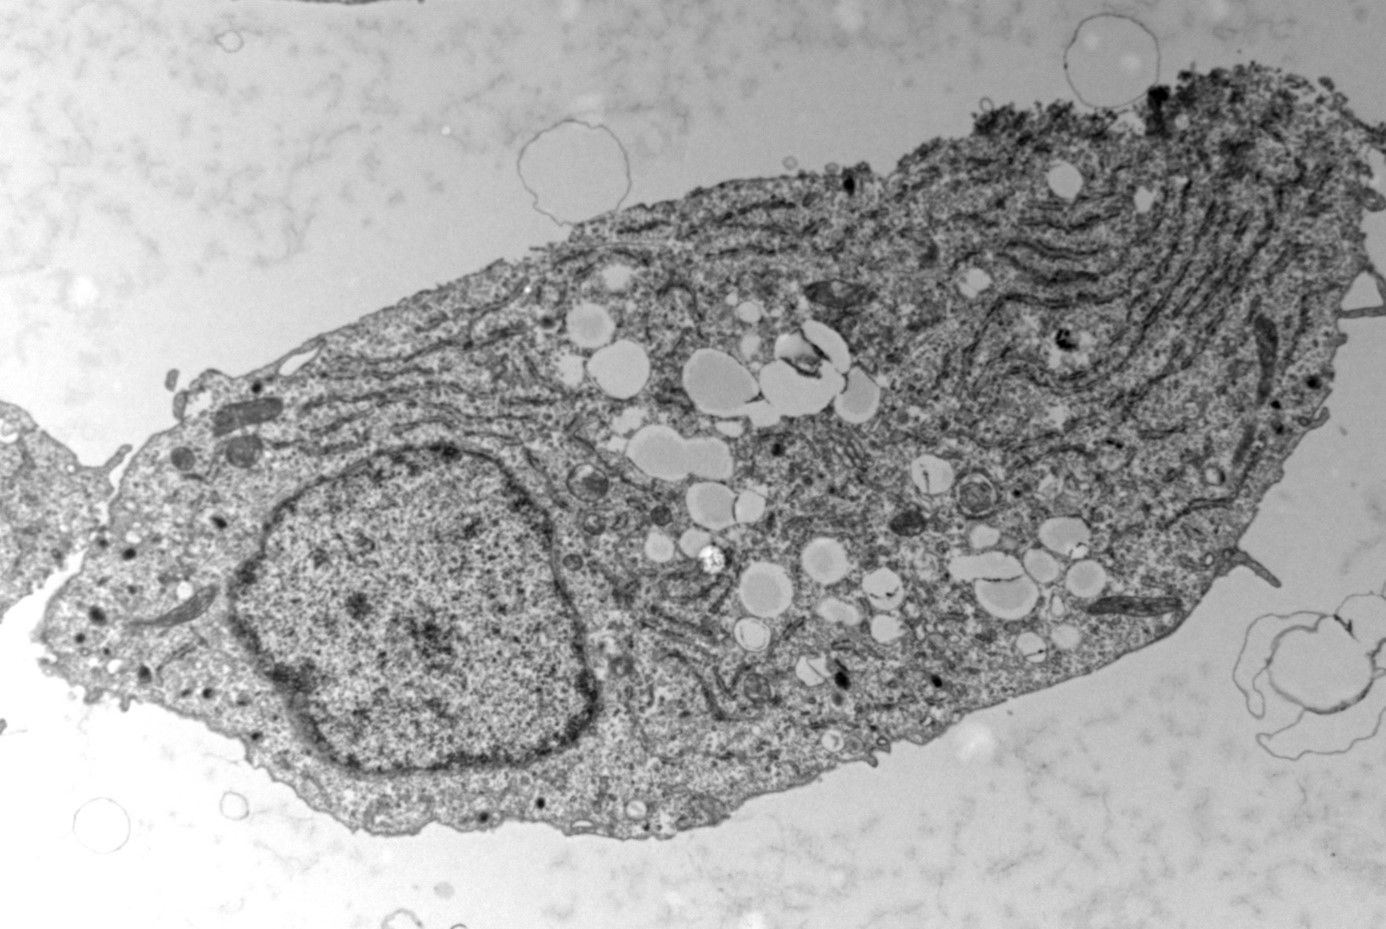 Pancreatic beta cells